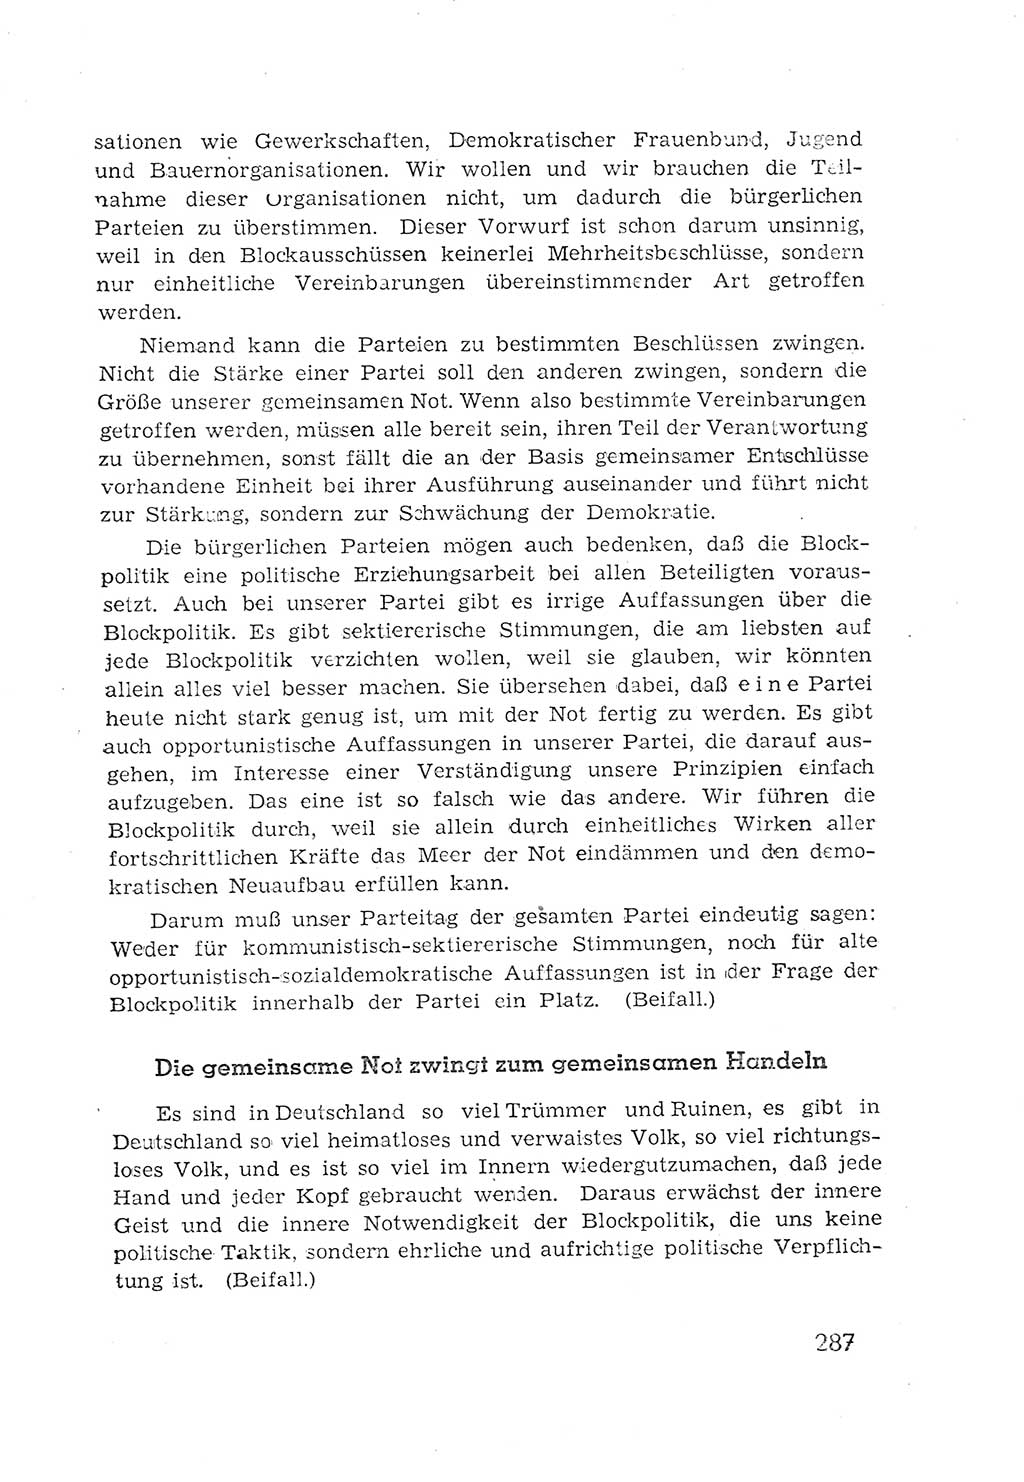 Protokoll der Verhandlungen des 2. Parteitages der Sozialistischen Einheitspartei Deutschlands (SED) [Sowjetische Besatzungszone (SBZ) Deutschlands] 1947, Seite 287 (Prot. Verh. 2. PT SED SBZ Dtl. 1947, S. 287)